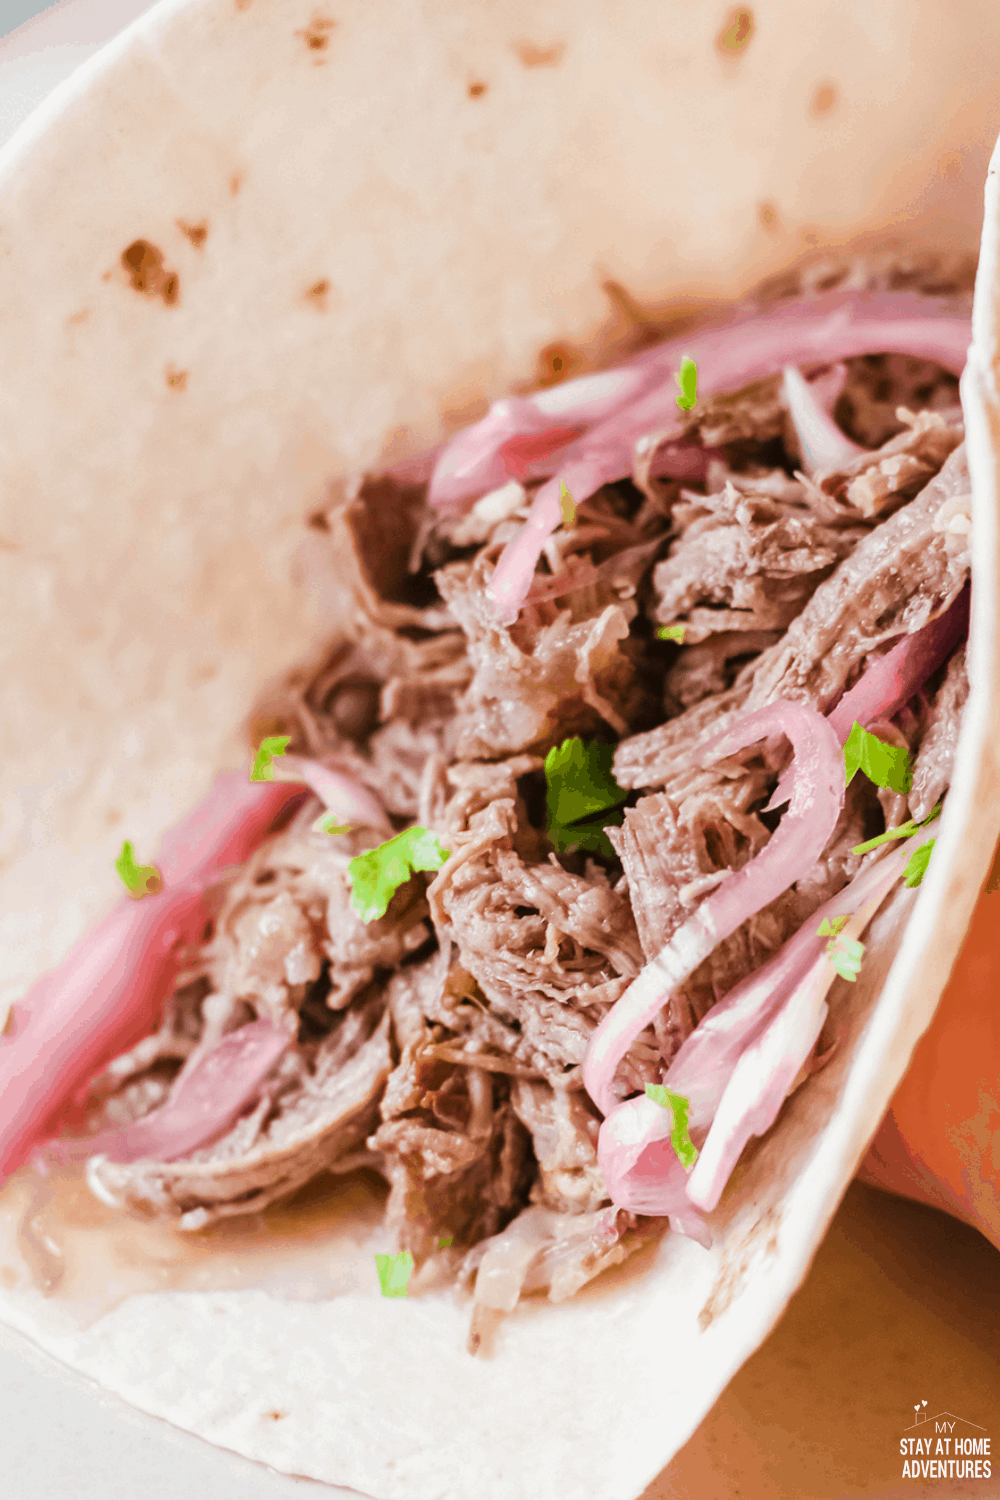  tacos de carne de vită mărunțită (tacos de Carne Deshebrada) sunt tacos fragede, aromate, uimitoare pe care familia ta le va cere din când în când. # tacos # tacosdeshebrada # shreddedbeeftacos # tacotuesday via @mystayathome 